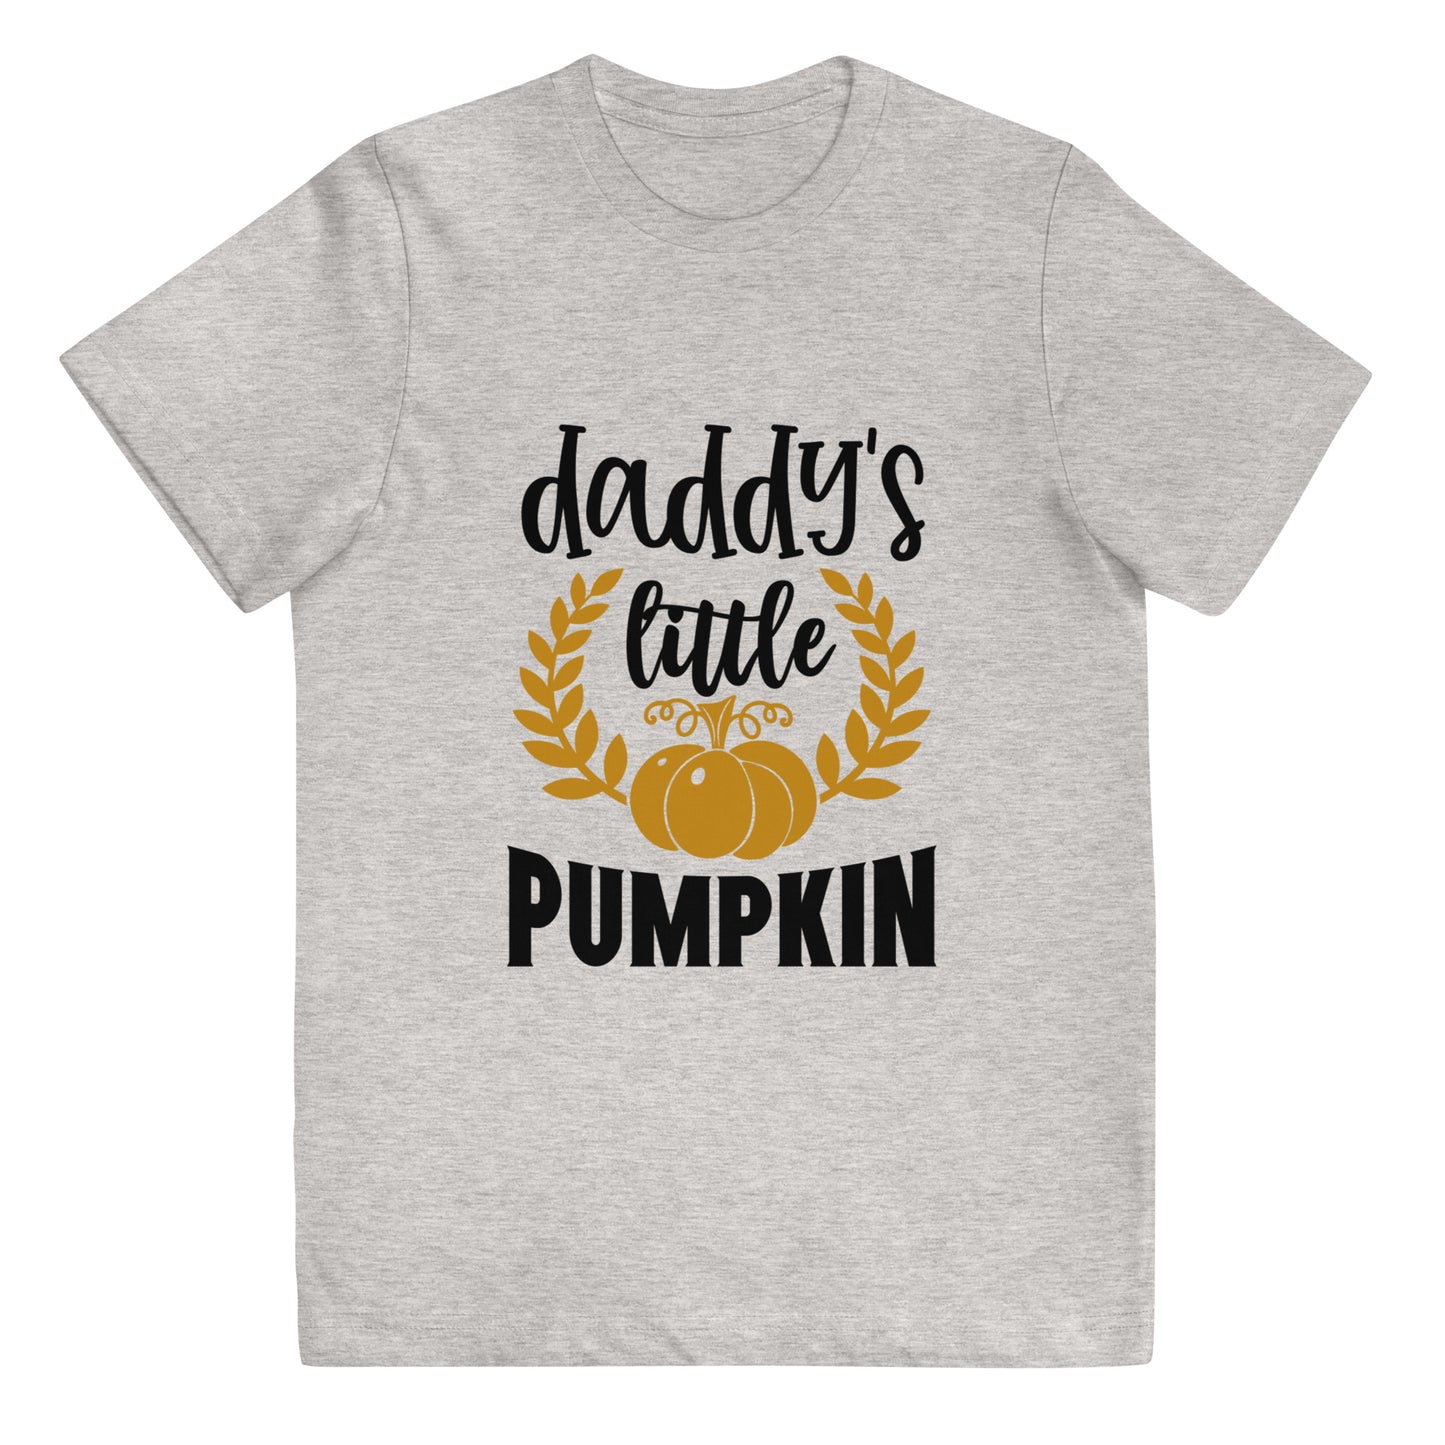 Daddy's Little Pumpkin Youth T-shirt